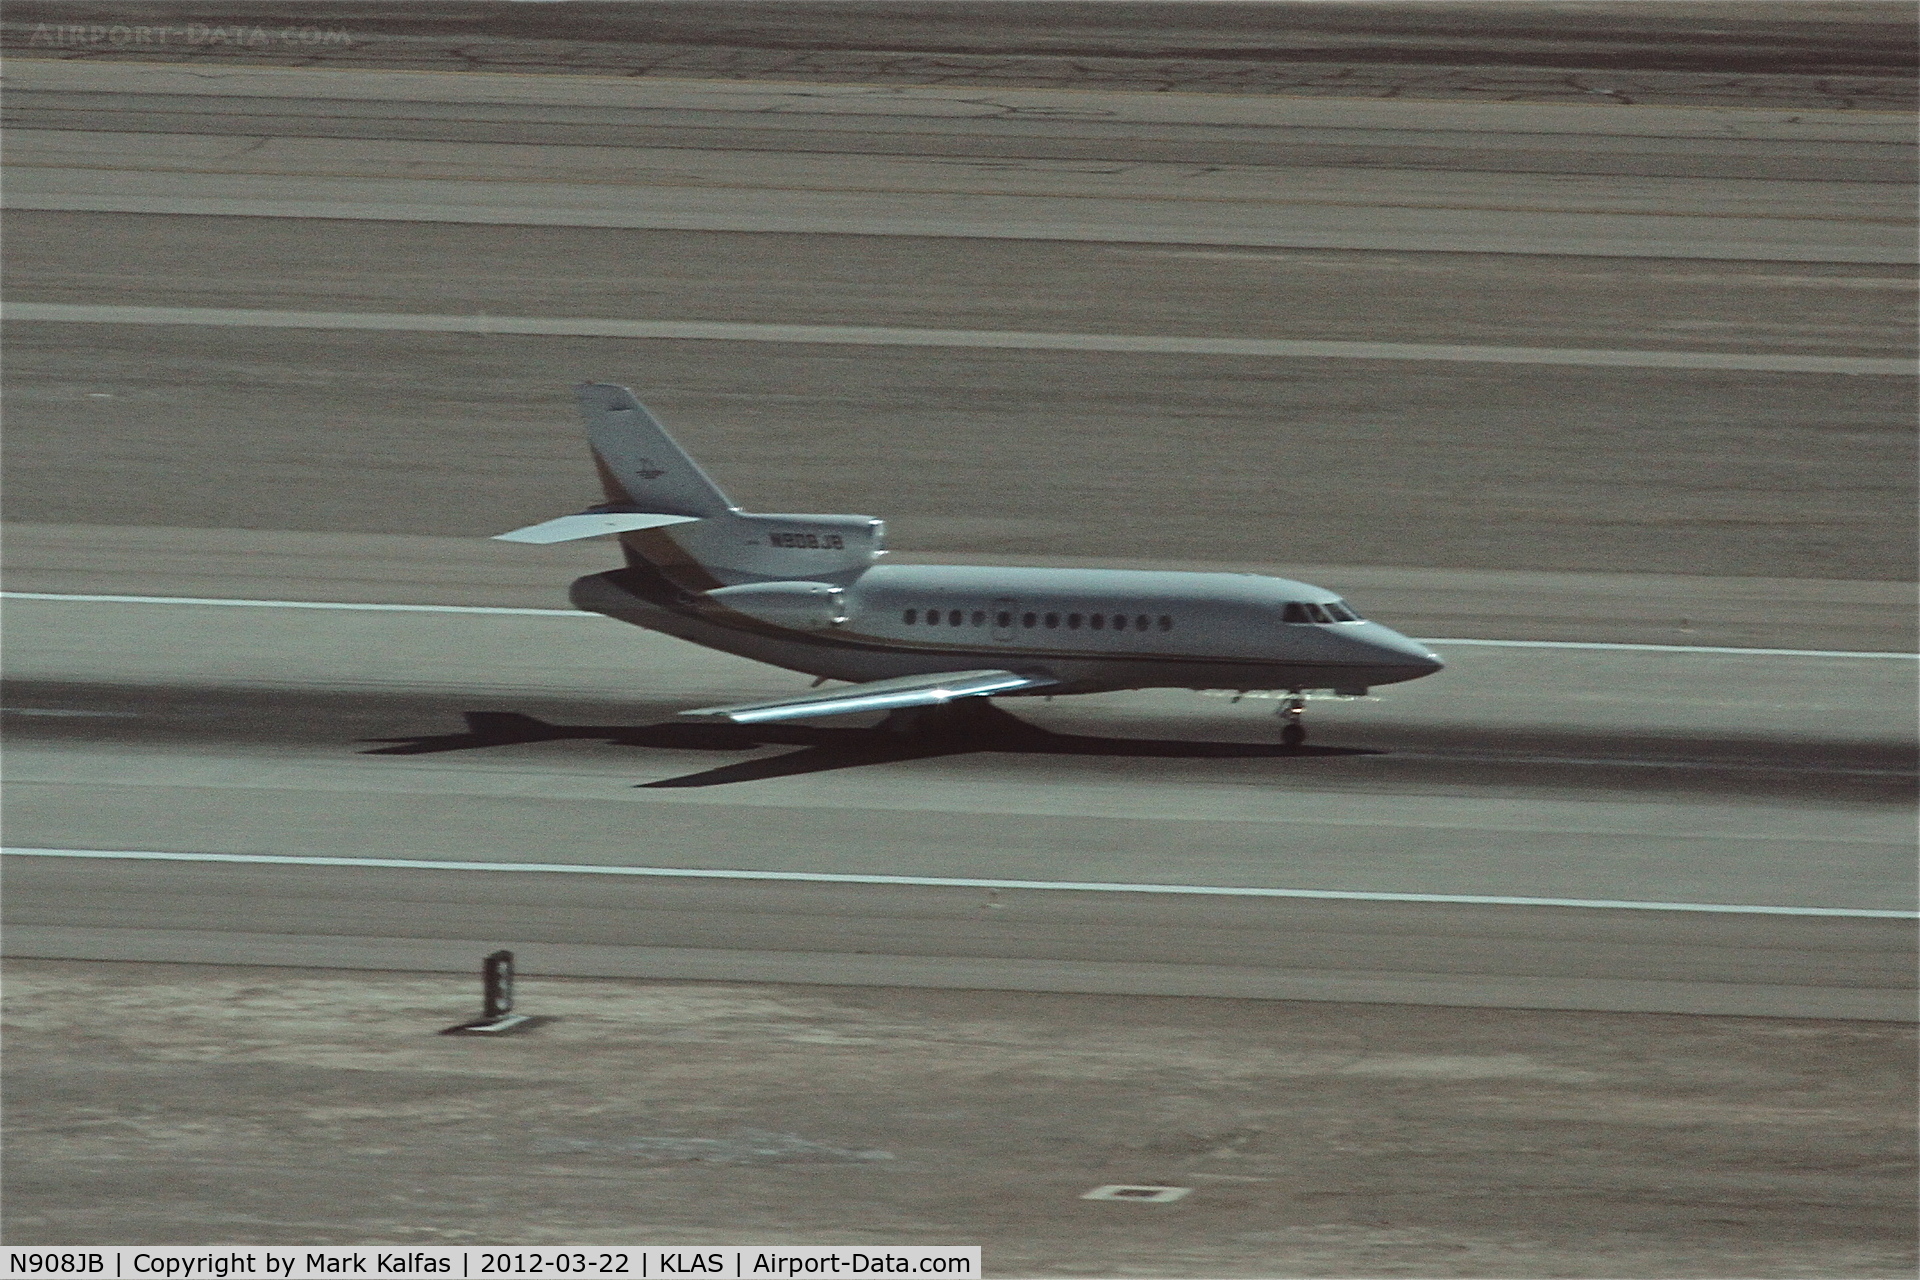 N908JB, 1992 Dassault Falcon 900 C/N 112, Jimmy Buffett/STRANGE BIRD INC. MYSTERE FALCON 900 departing RWY 19R KLAS, en route to Palm Beach International/KPBI.